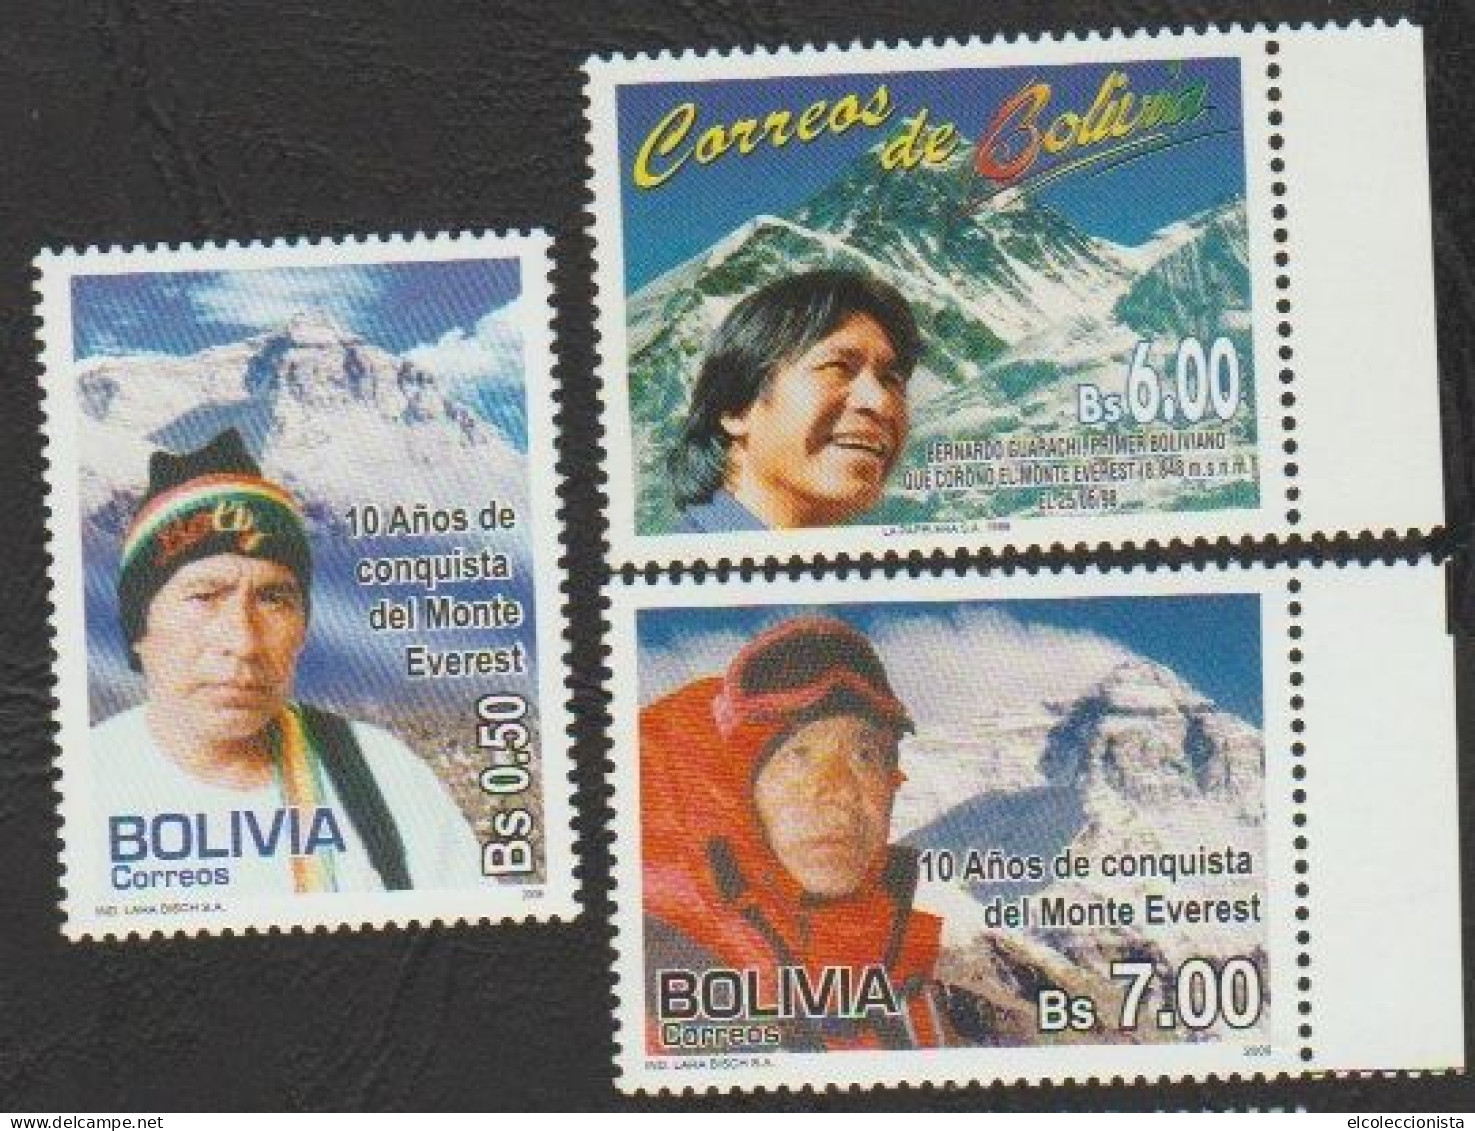 1999-2009 Bolivia Bernardo Guarachi Climber Mt. Everest MNH Scott 1056 1405 1406 - Bolivië